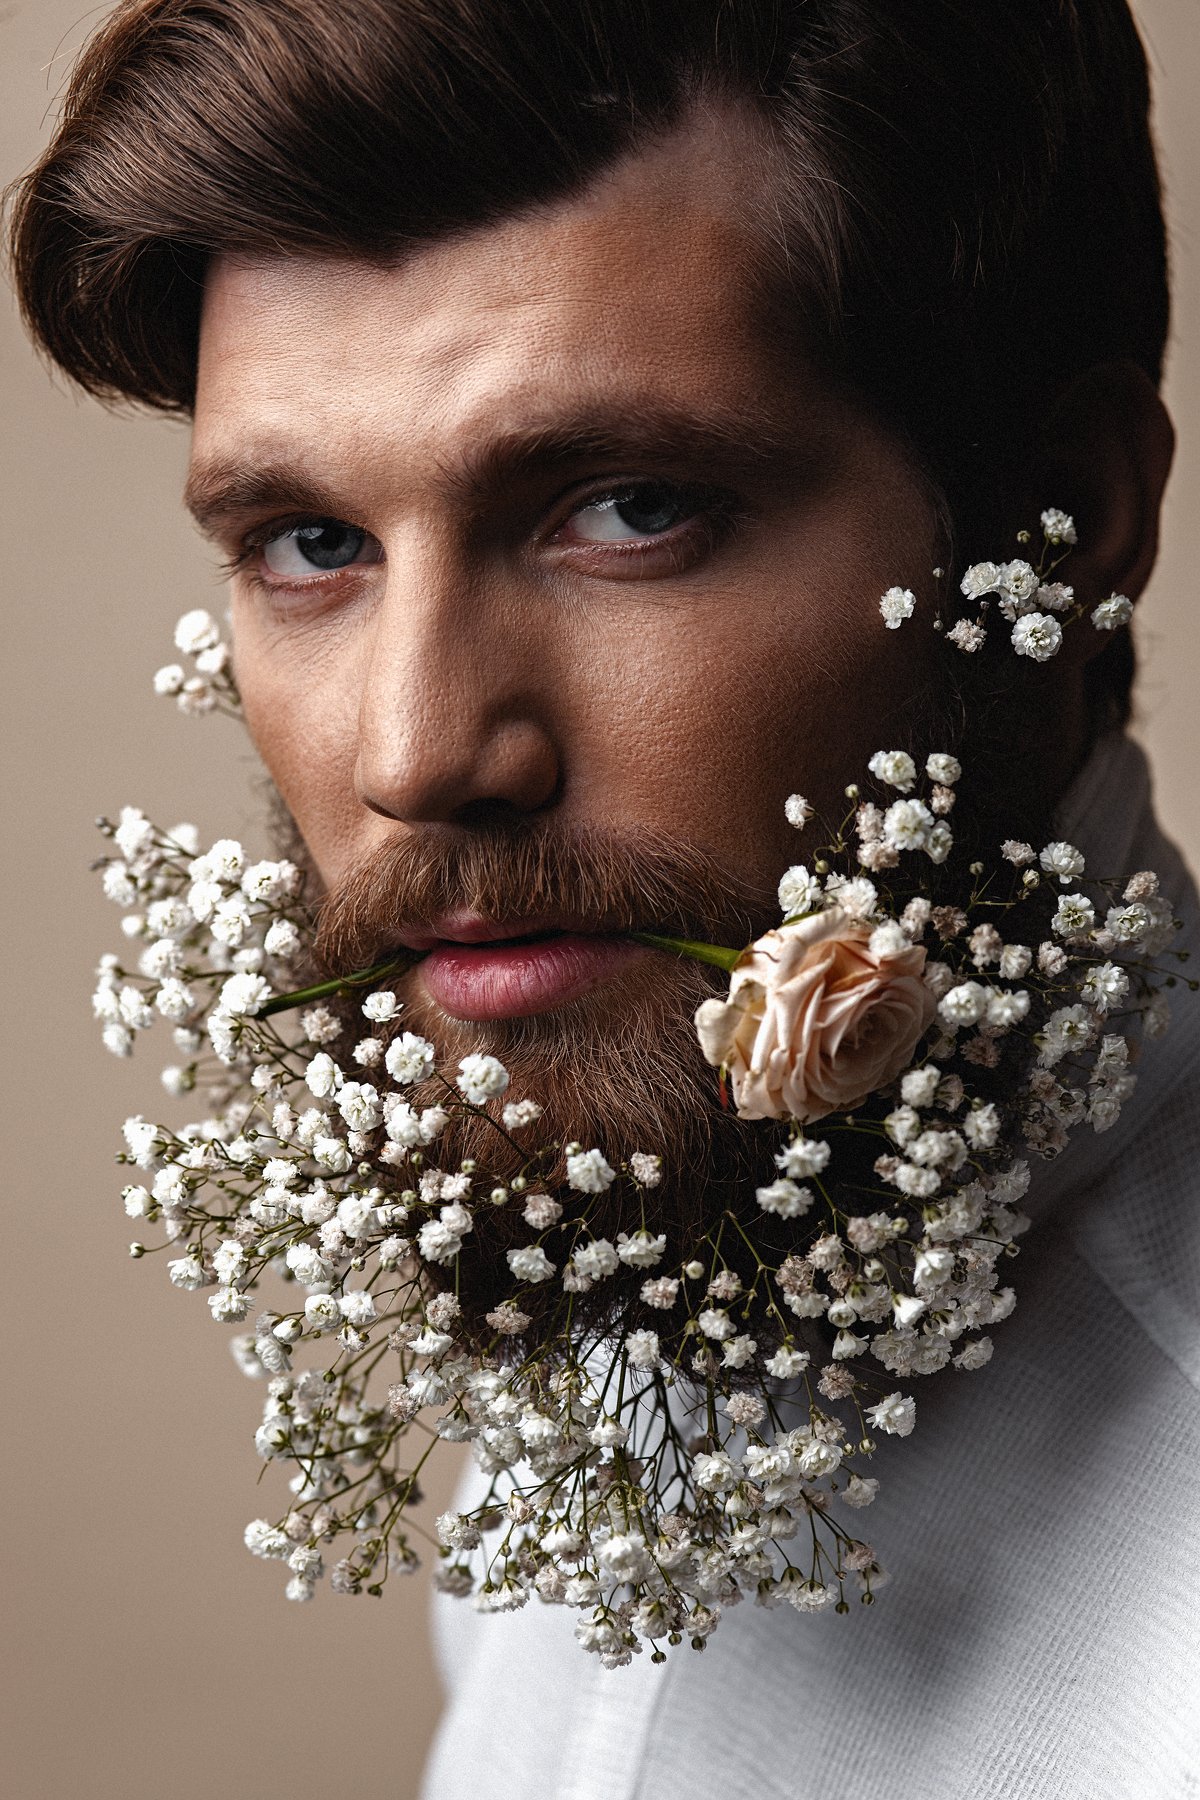 мужской портрет, парень, борода, мужчина, цветы, роза, бьюти, Никита Чурсин